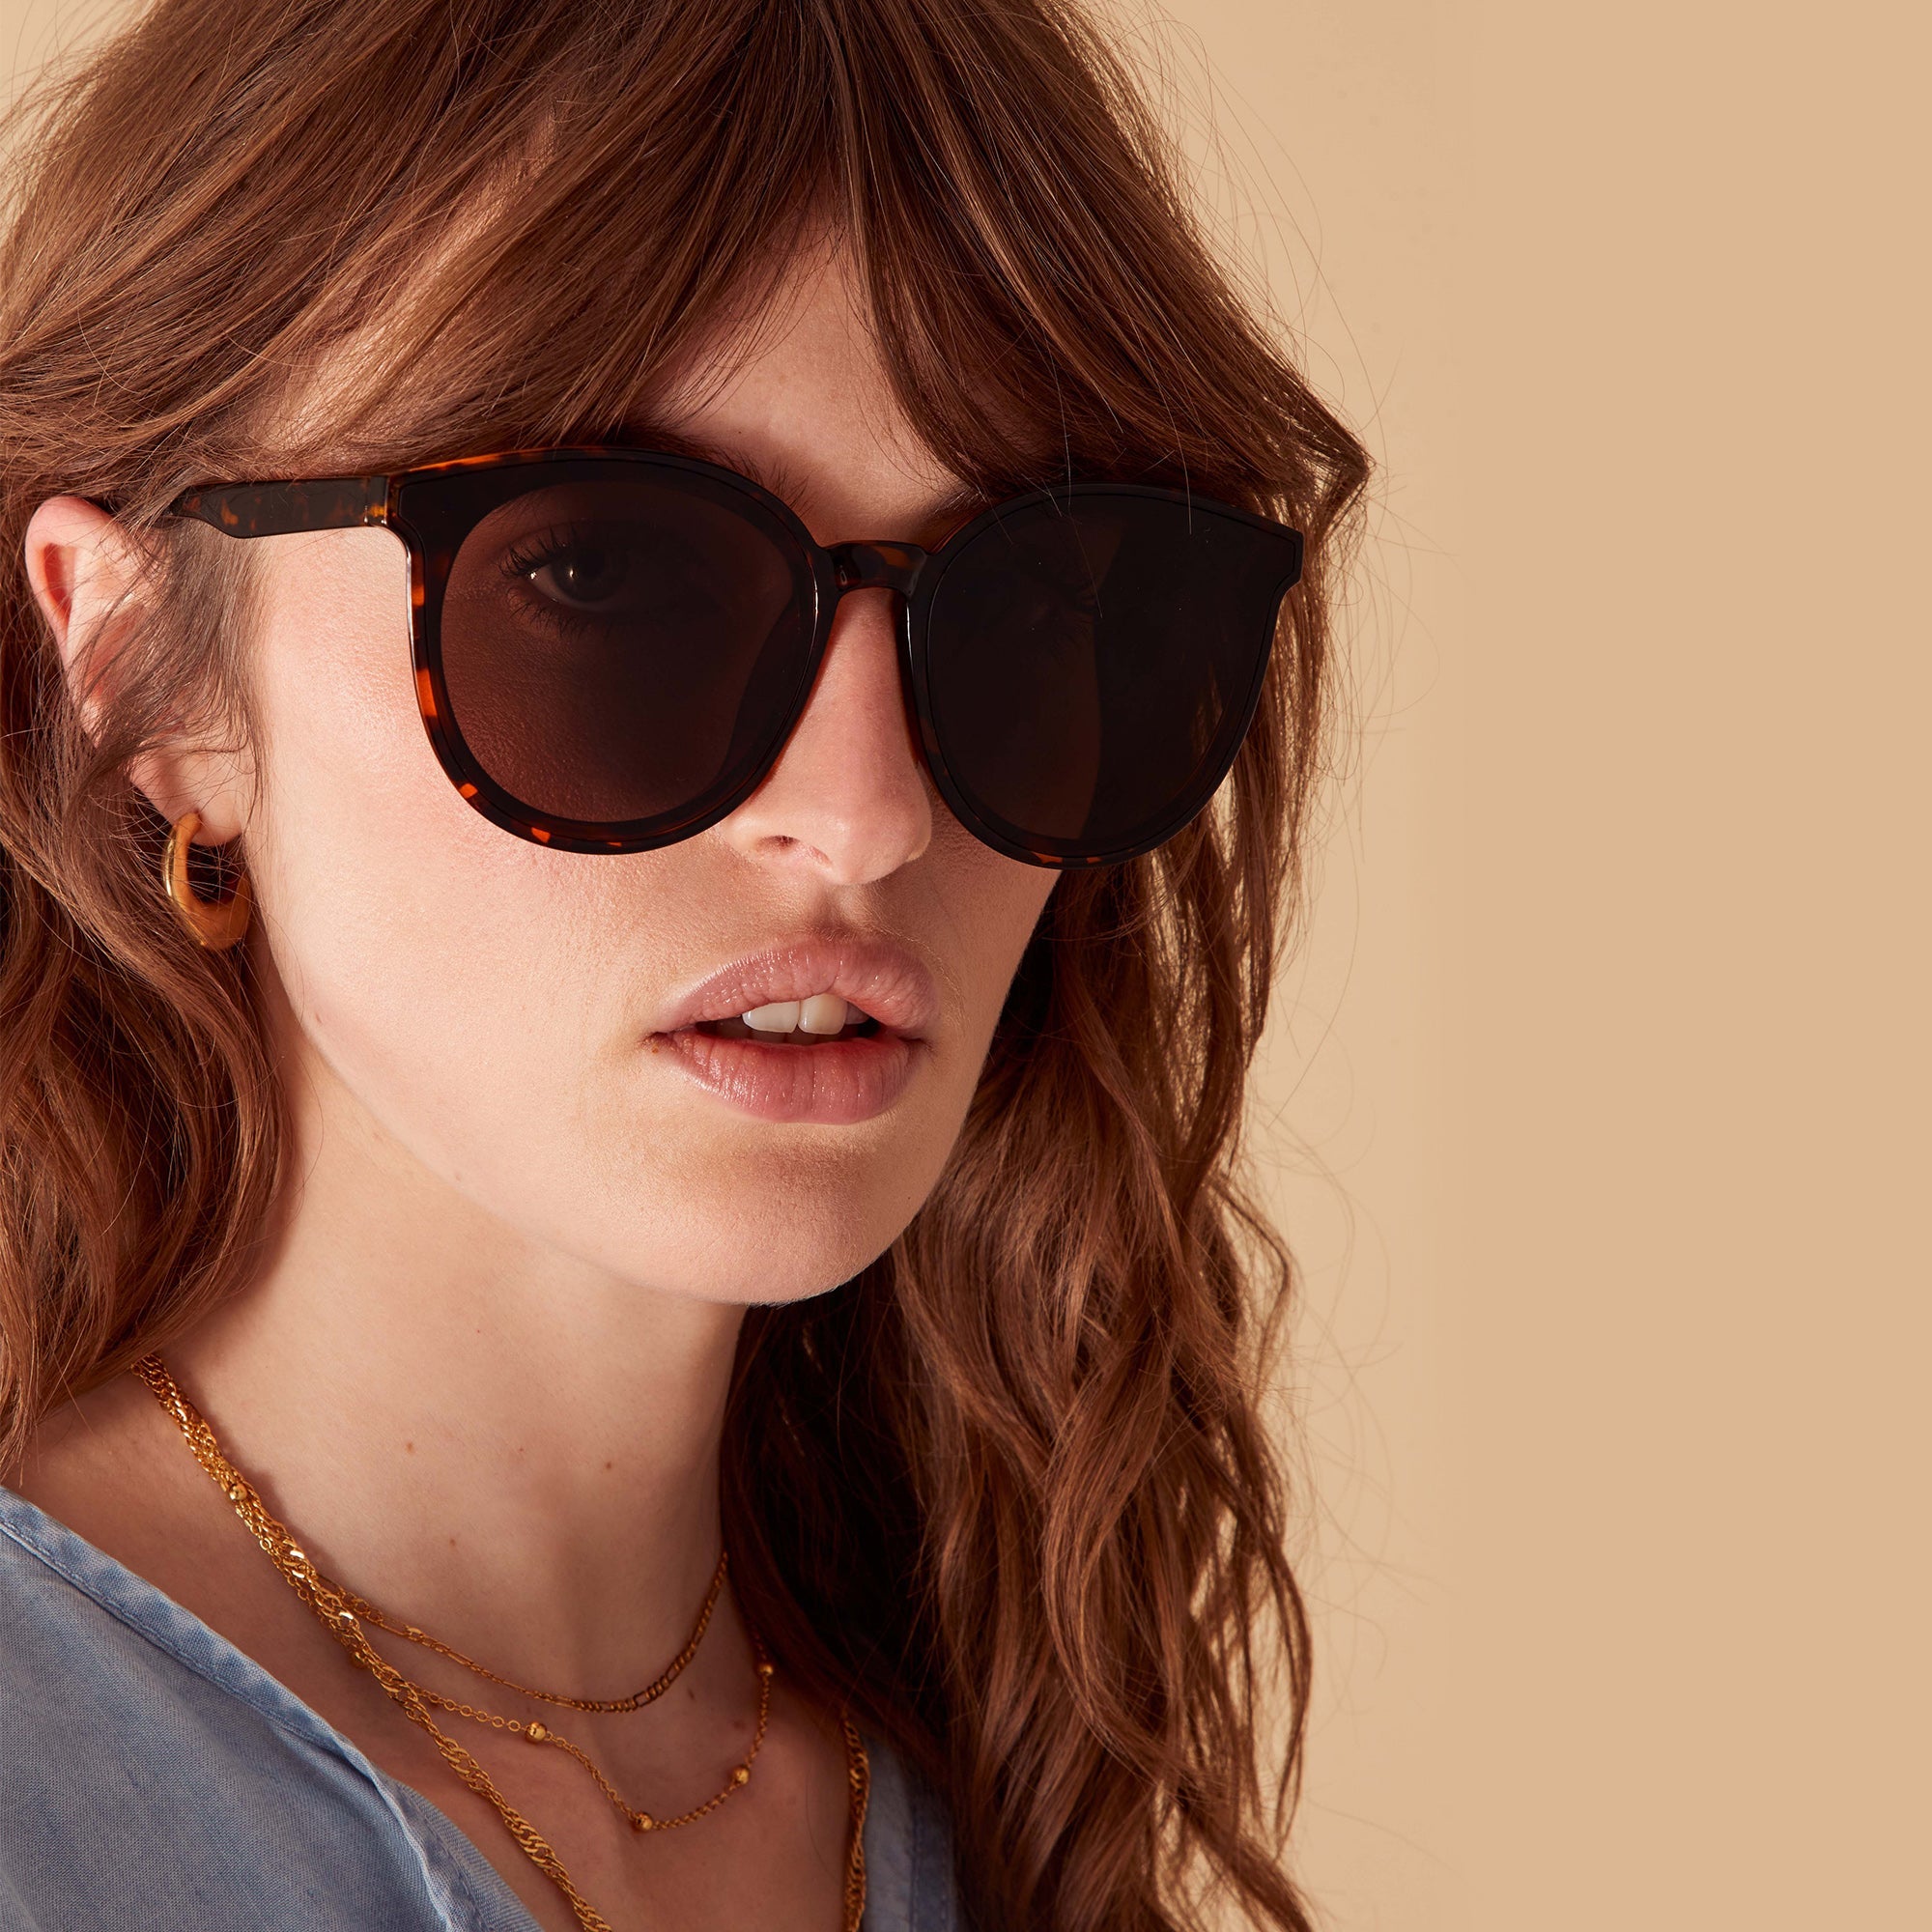 Accessorize London Women's Brown Preppy Sunglasses